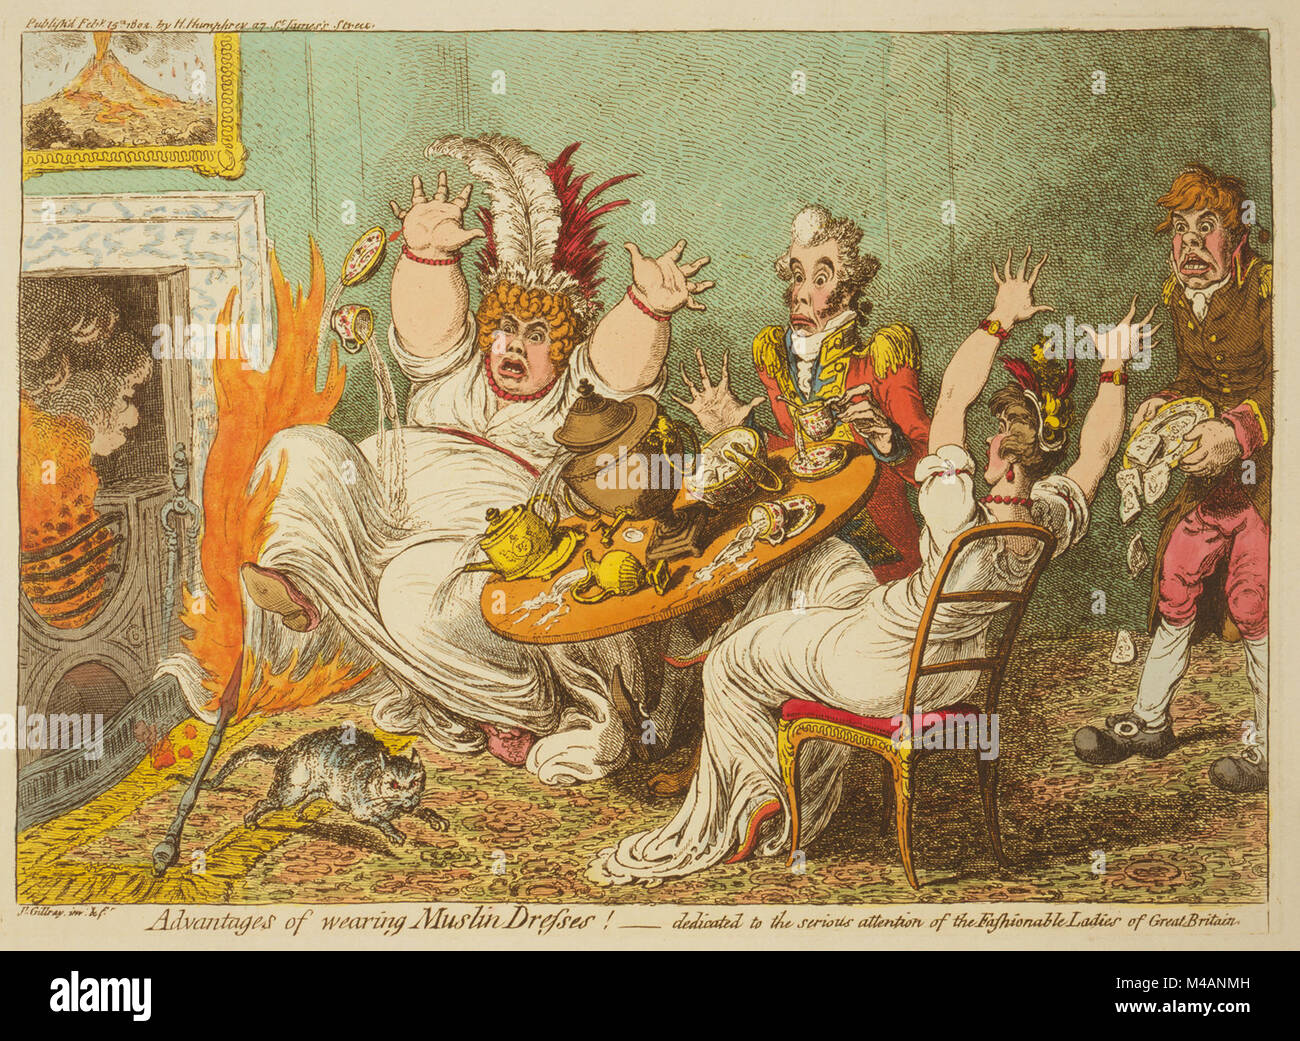 Vorteile des Tragens musselin Kleider! Von James Gillray veröffentlicht 1802. Eine dicke Frau, sitzen mit ein Mann und eine Frau an einem Tisch, reagiert mit Entsetzen, wie eine heiße Poker von der Feuer auf ihr Kleid fällt und setzt sie in Brand. Der Mann sitzt hilflos, während die zweite Frau bringt die Tabelle in Ihren Alarm. Ein Butler, den Raum betreten, fällt eine Platte von Muffins und eine Katze scampers vom Feuer. Ein Gemälde von Mt. Vesuv hängt über dem Kamin. Stockfoto